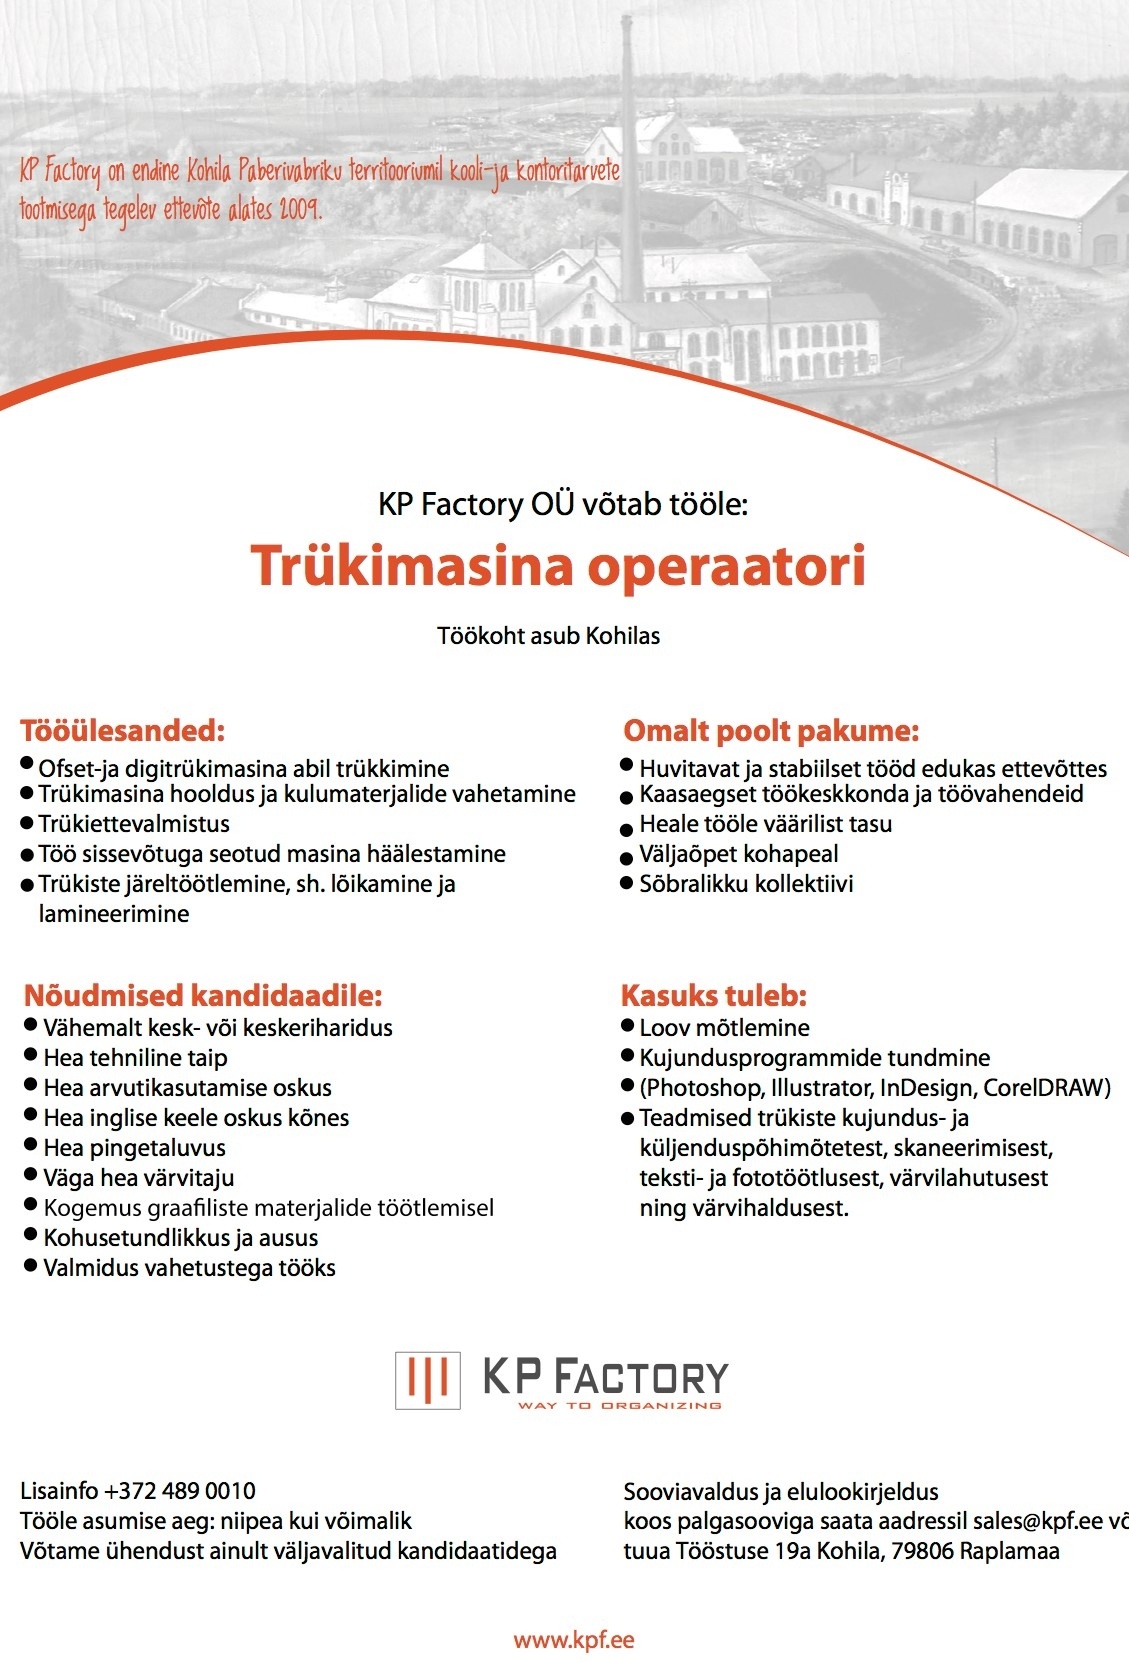 KP Factory OÜ Trükitööline